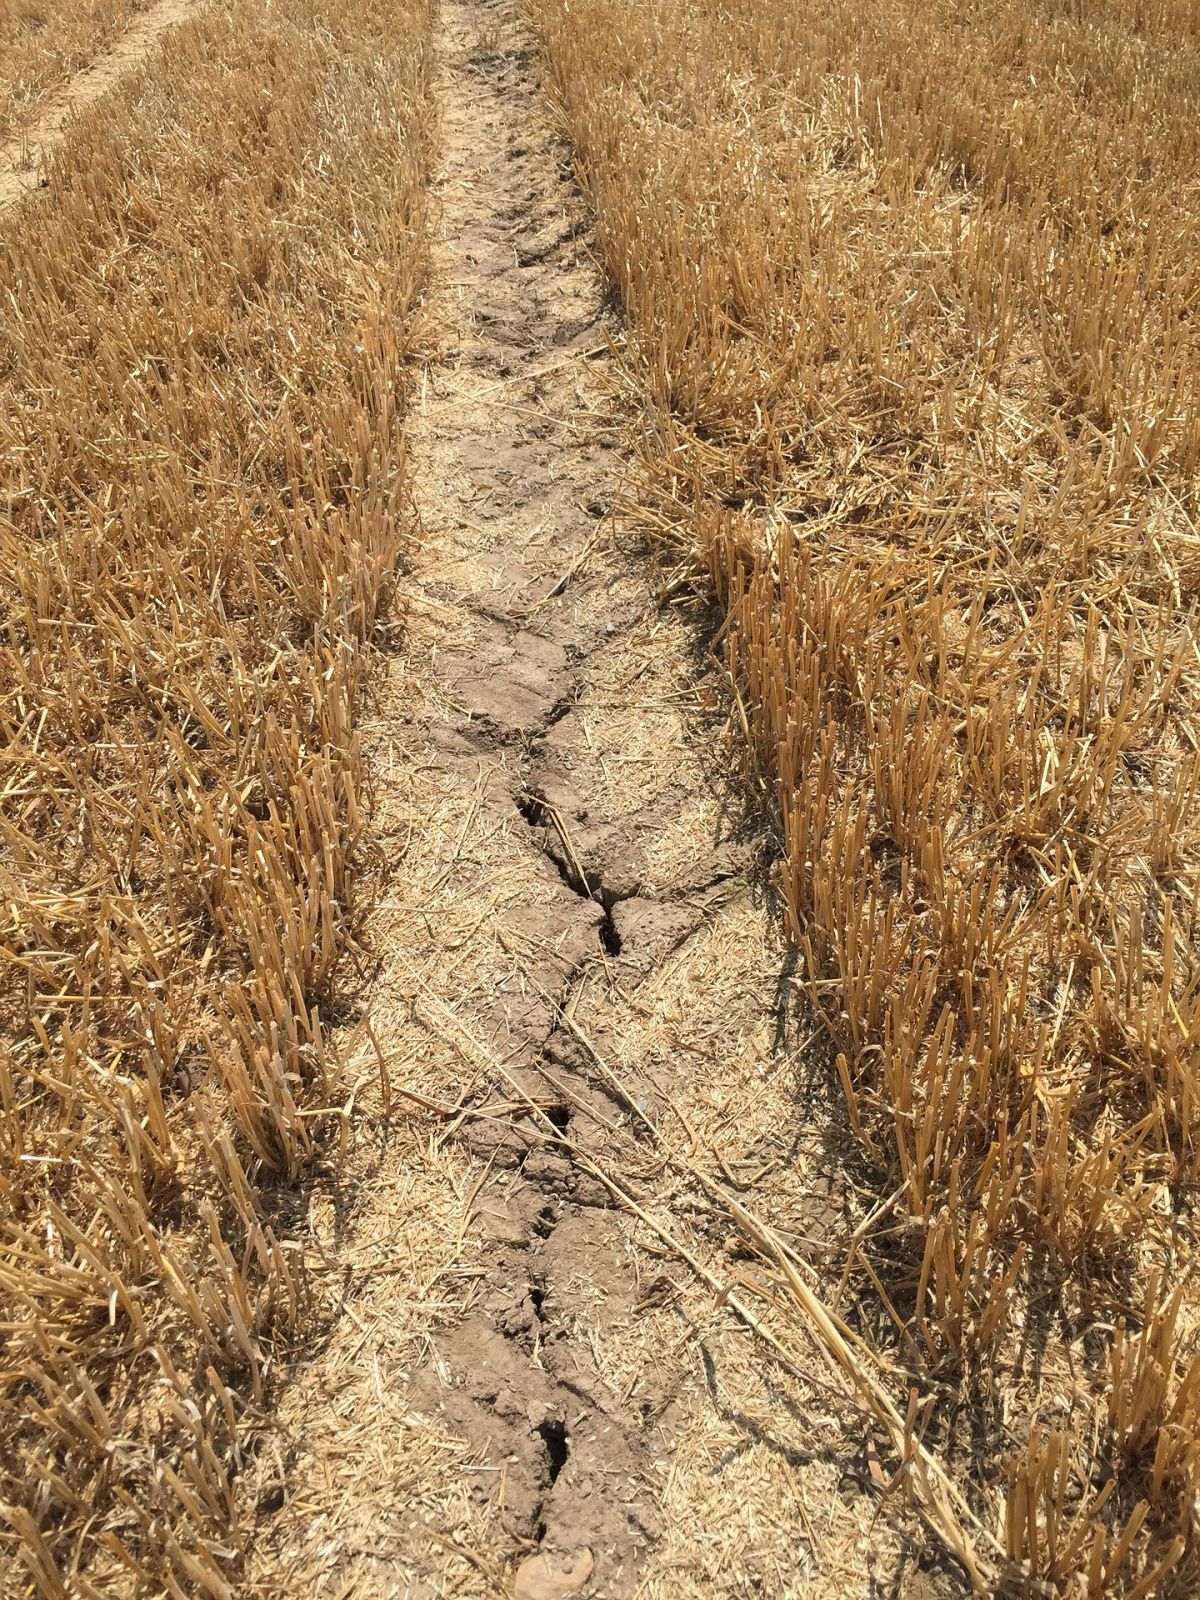 Anhaltende Trockenheit ist auch in der Landwirtschaft eine Problem - nicht überall ist eine künstliche Bewässerung möglich und zudem wird Wasser zunehmend knapper.
